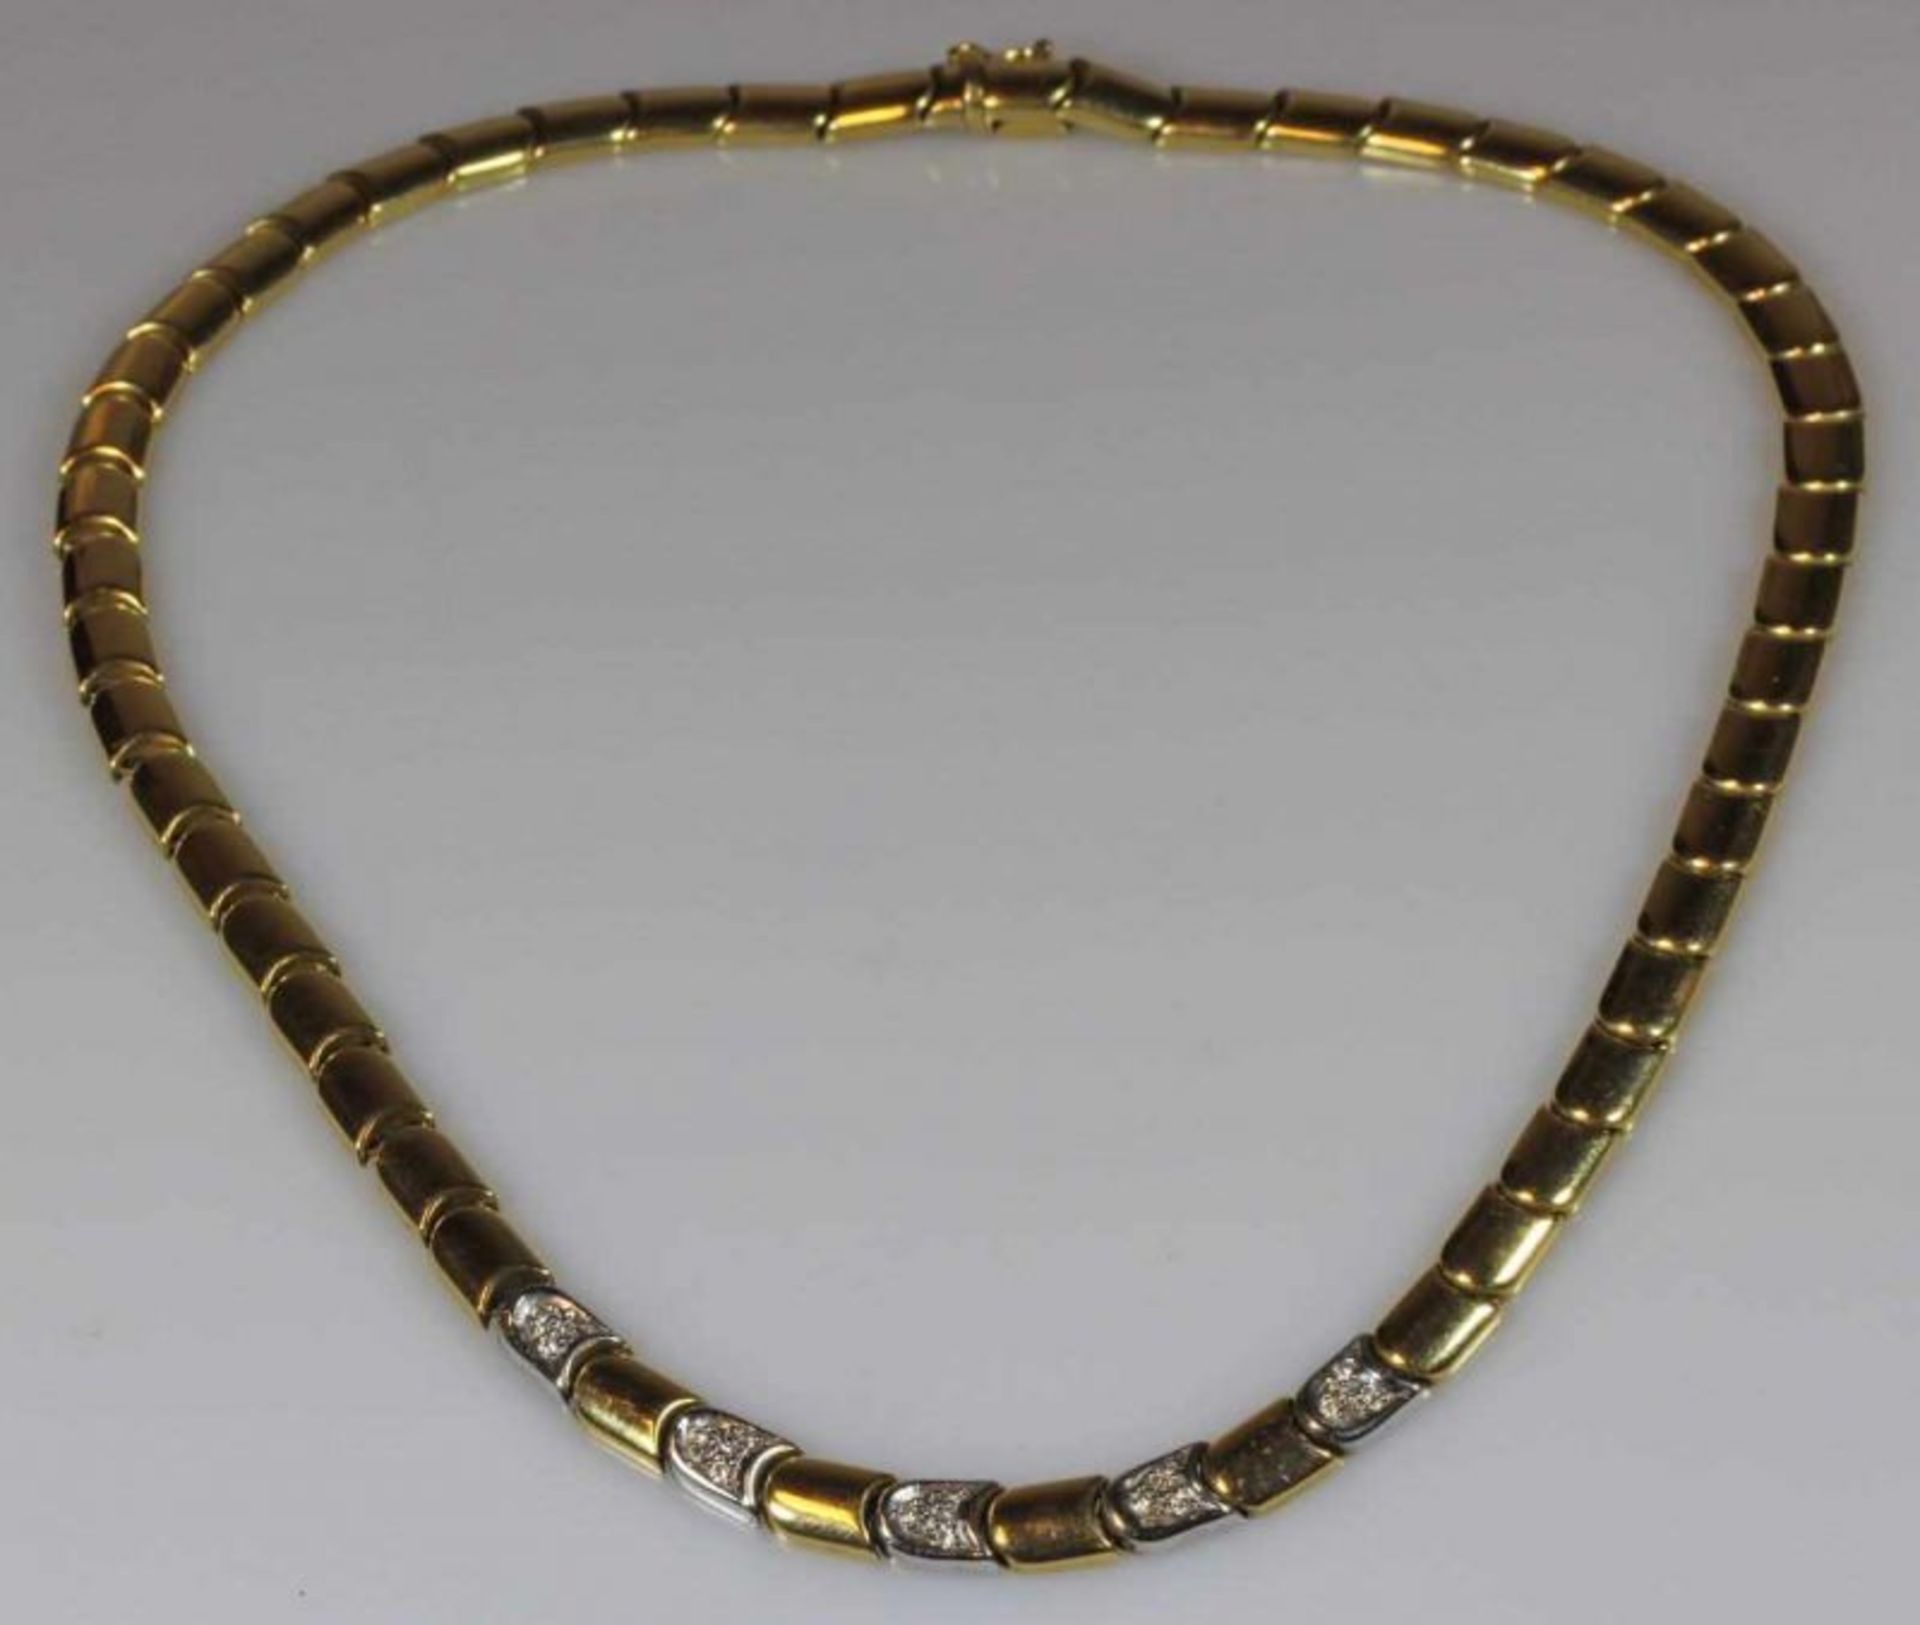 Halskette, WG/GG 750, 5 Elemente mit kleinem Diamant-Besatz, 44 cm lang, 36 g 20.00 % buyer's